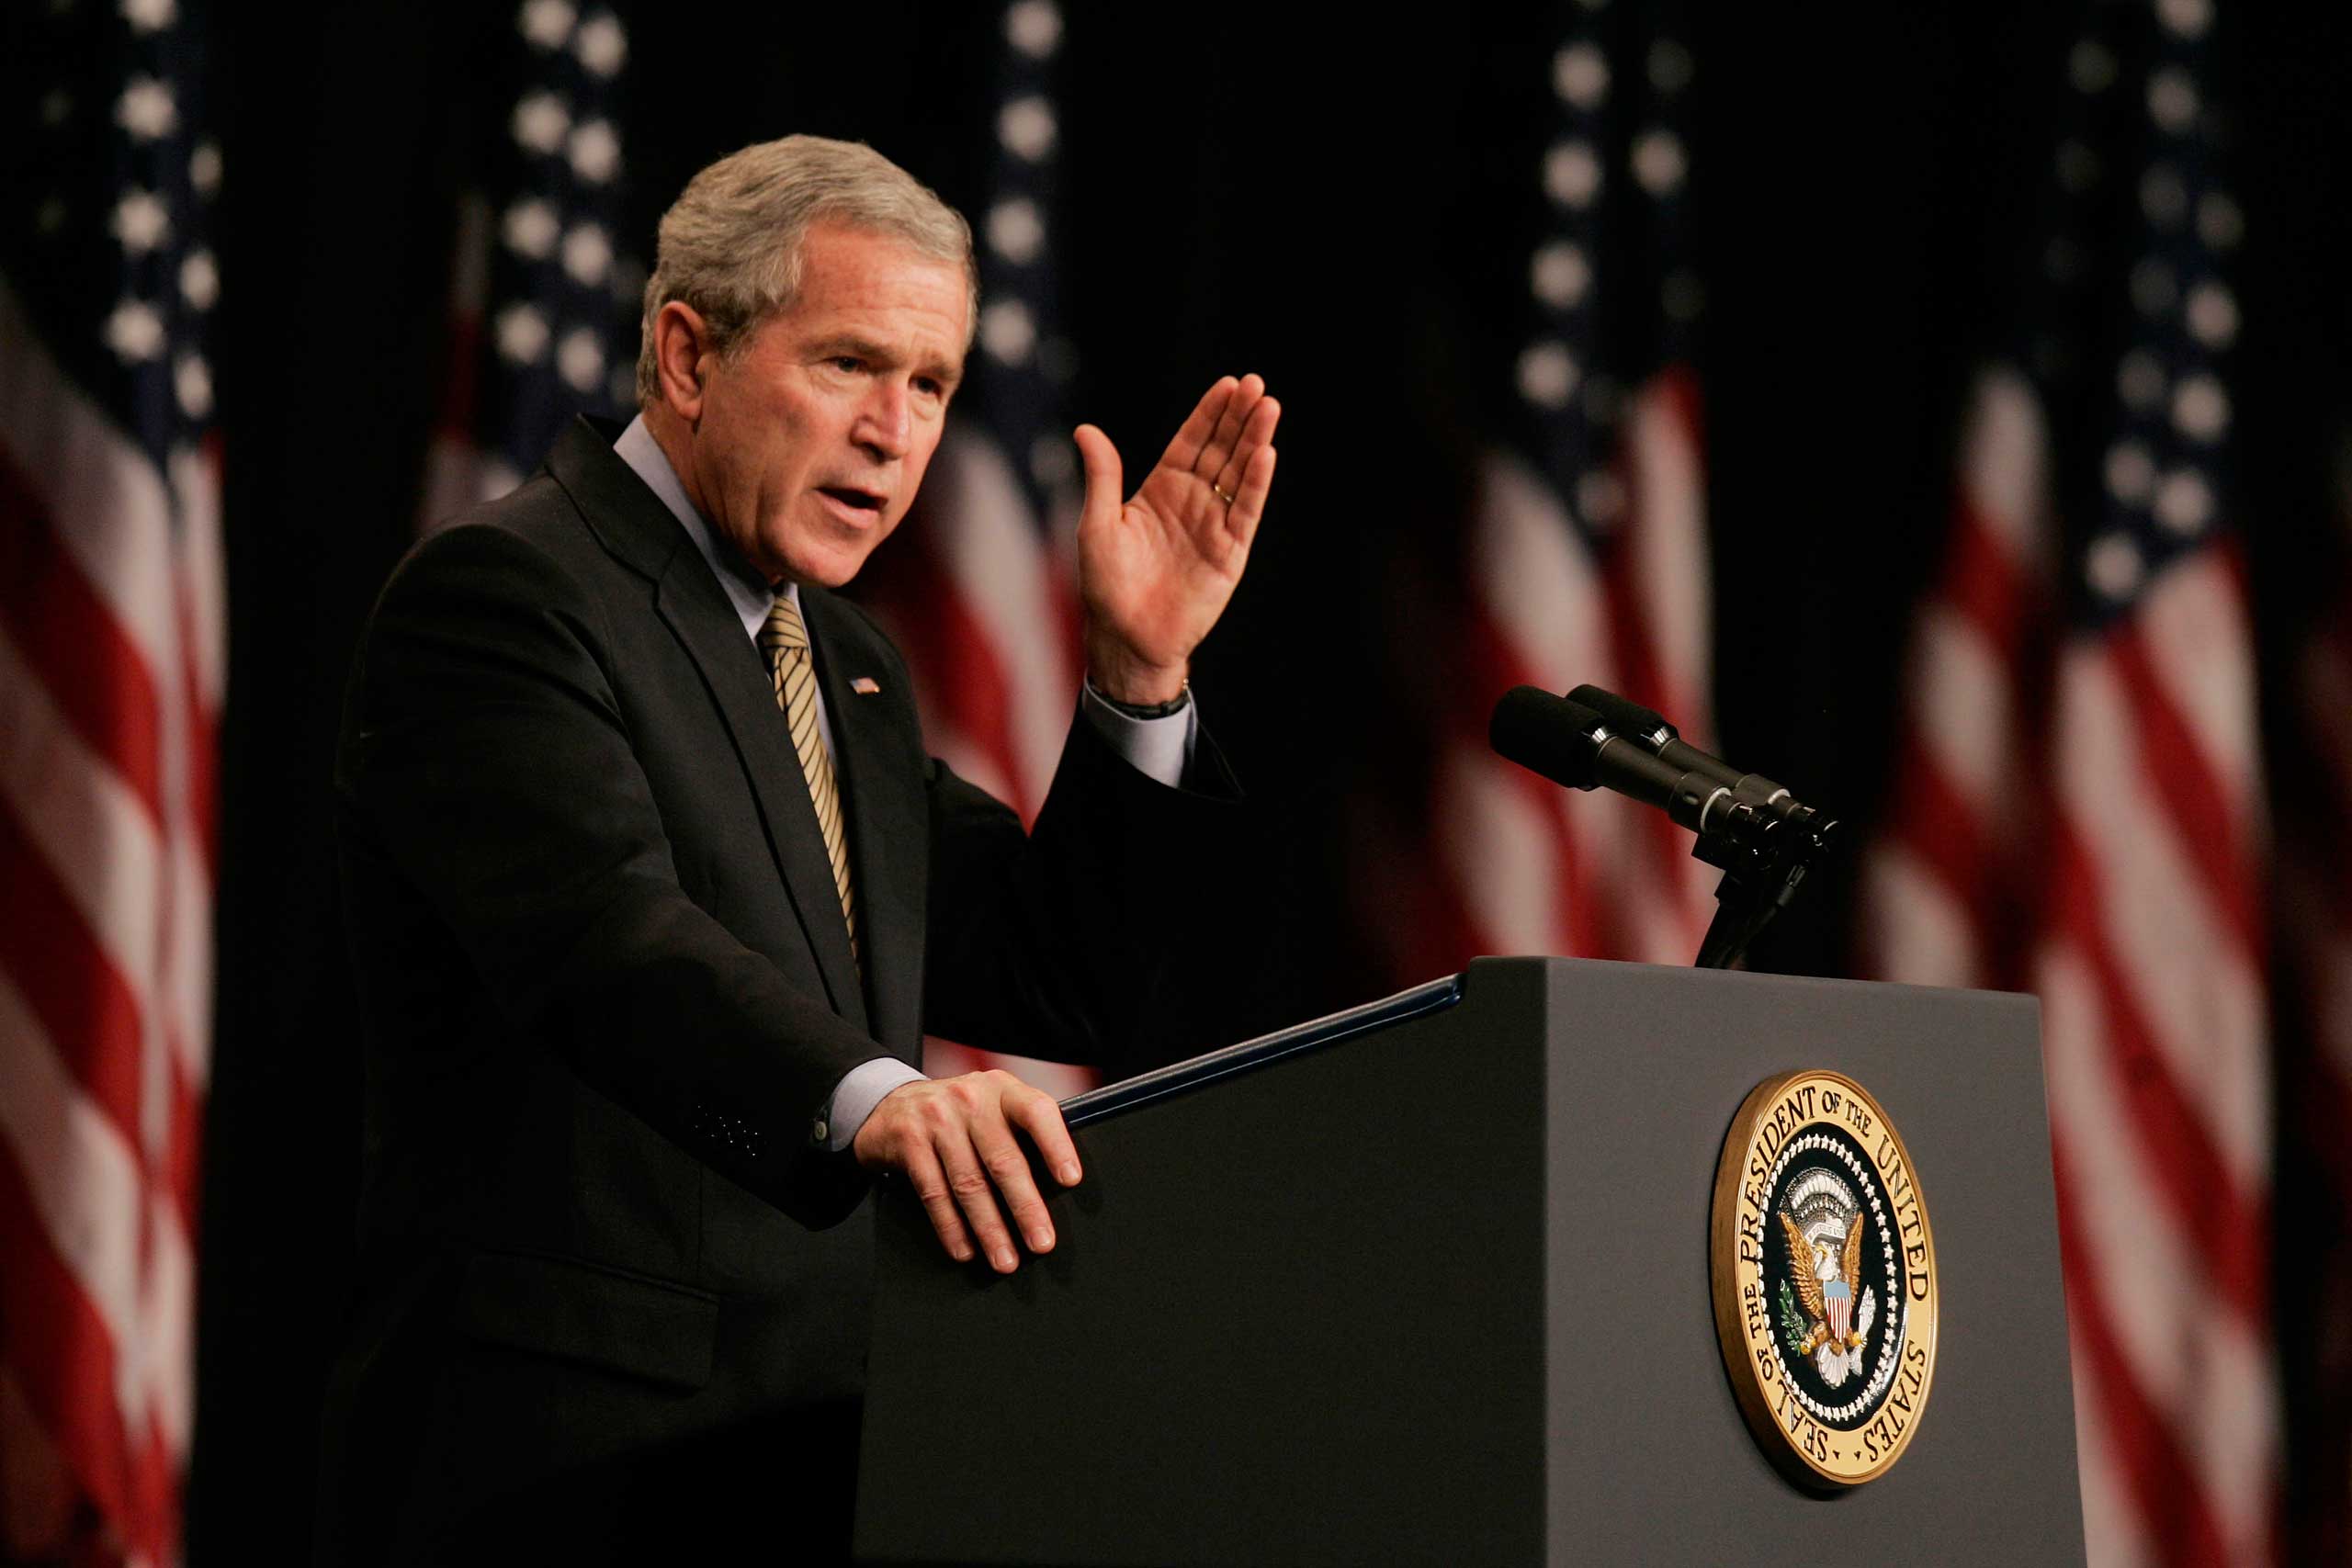 Alasan dan Mengapa George W. Bush Mengelola program penyiksaan di rezimnya